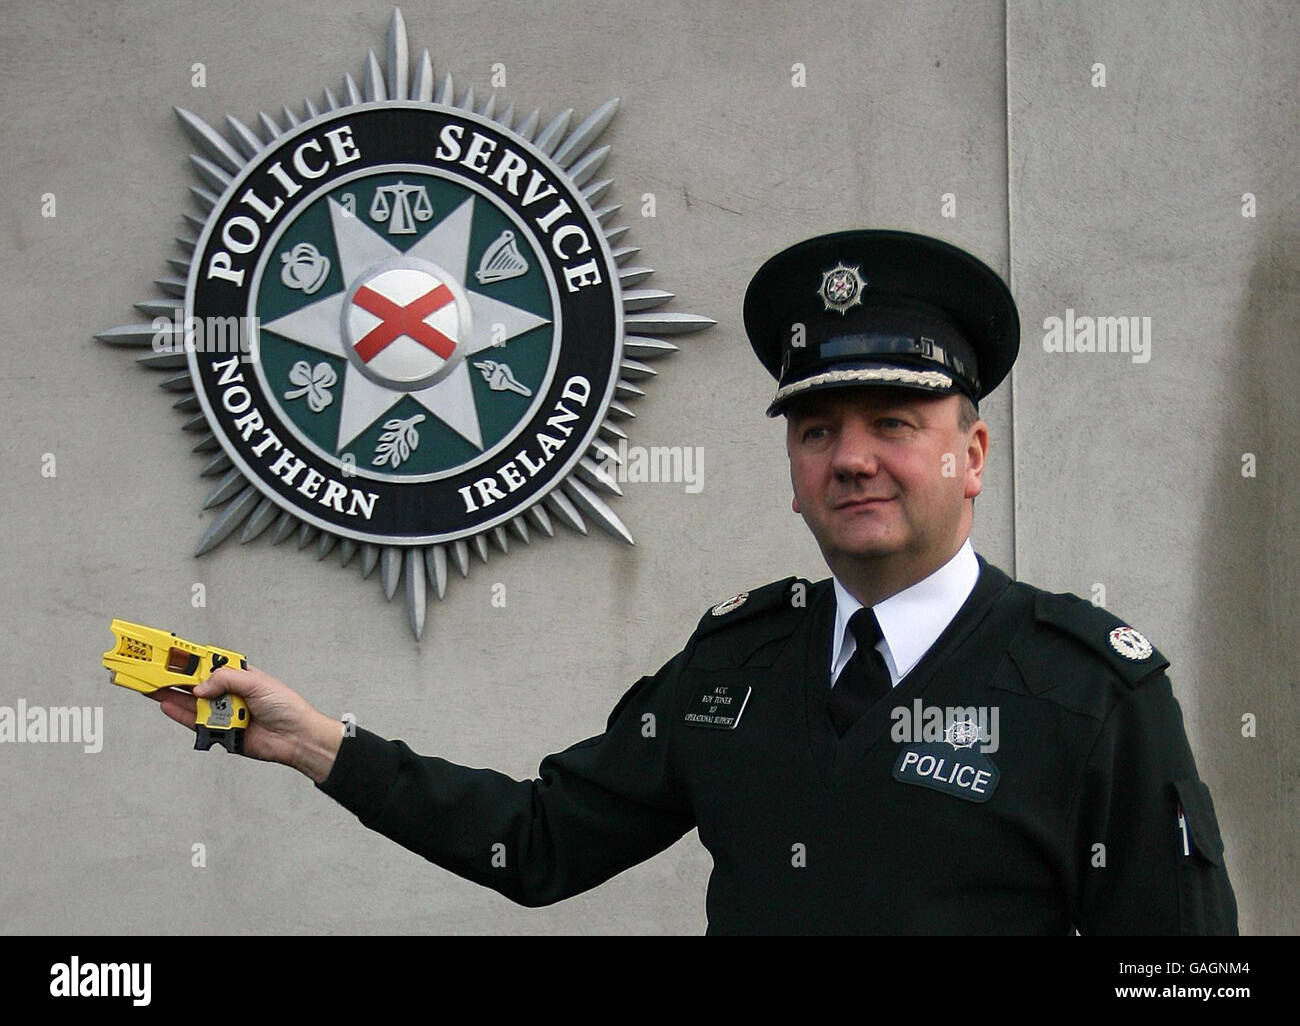 Der Polizeidienst von Nordirland, stellvertretender Chief Constable Roy Toner, hält eine Taser-Elektroschocker vor dem PSNI-Hauptquartier in Belfast. Stockfoto